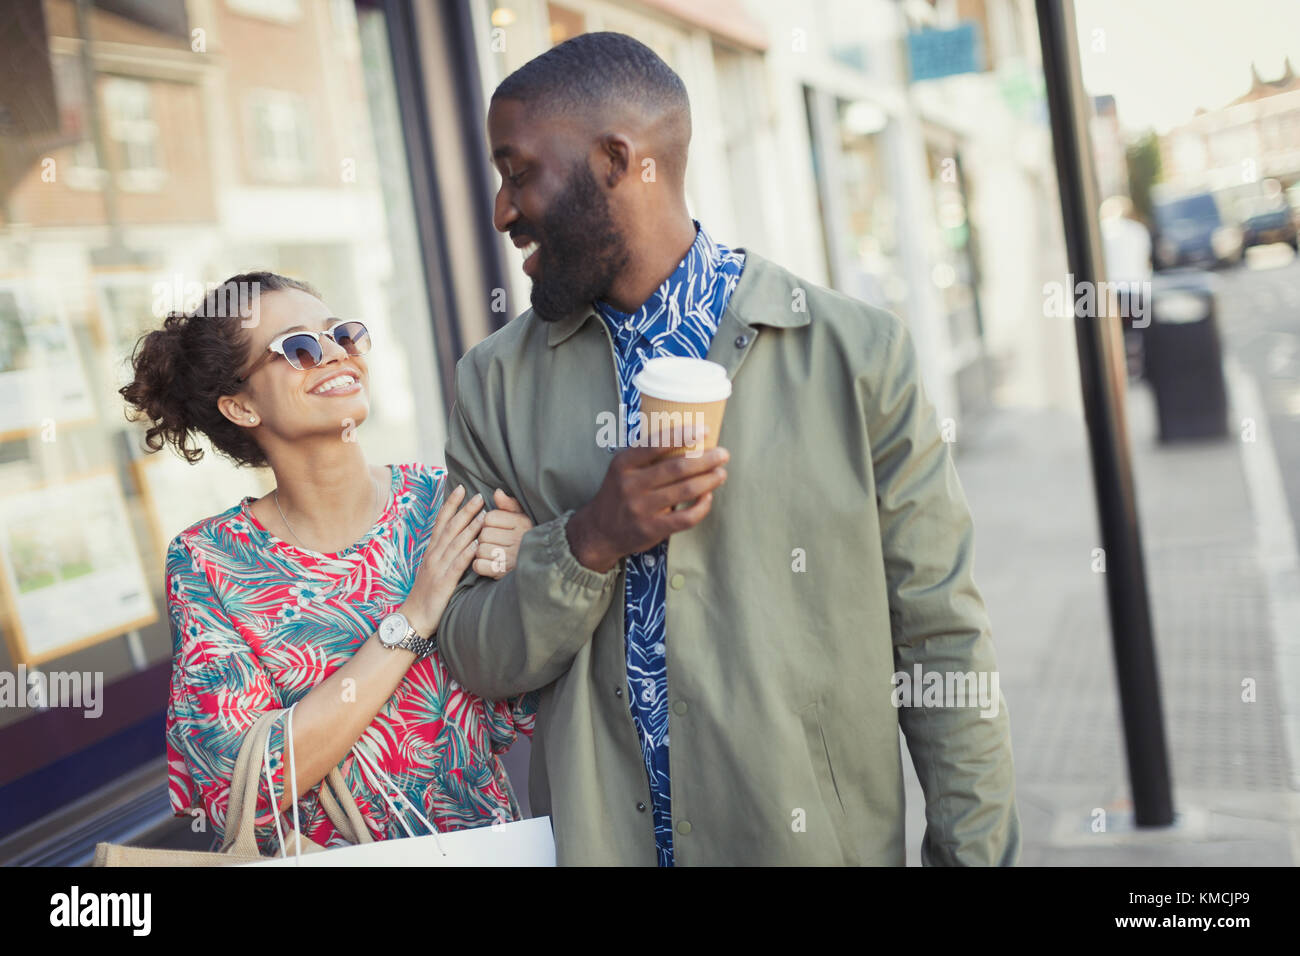 Lächelndes junges Paar mit Kaffee, der Arm in Arm entlang geht Schaufensterfronten Stockfoto